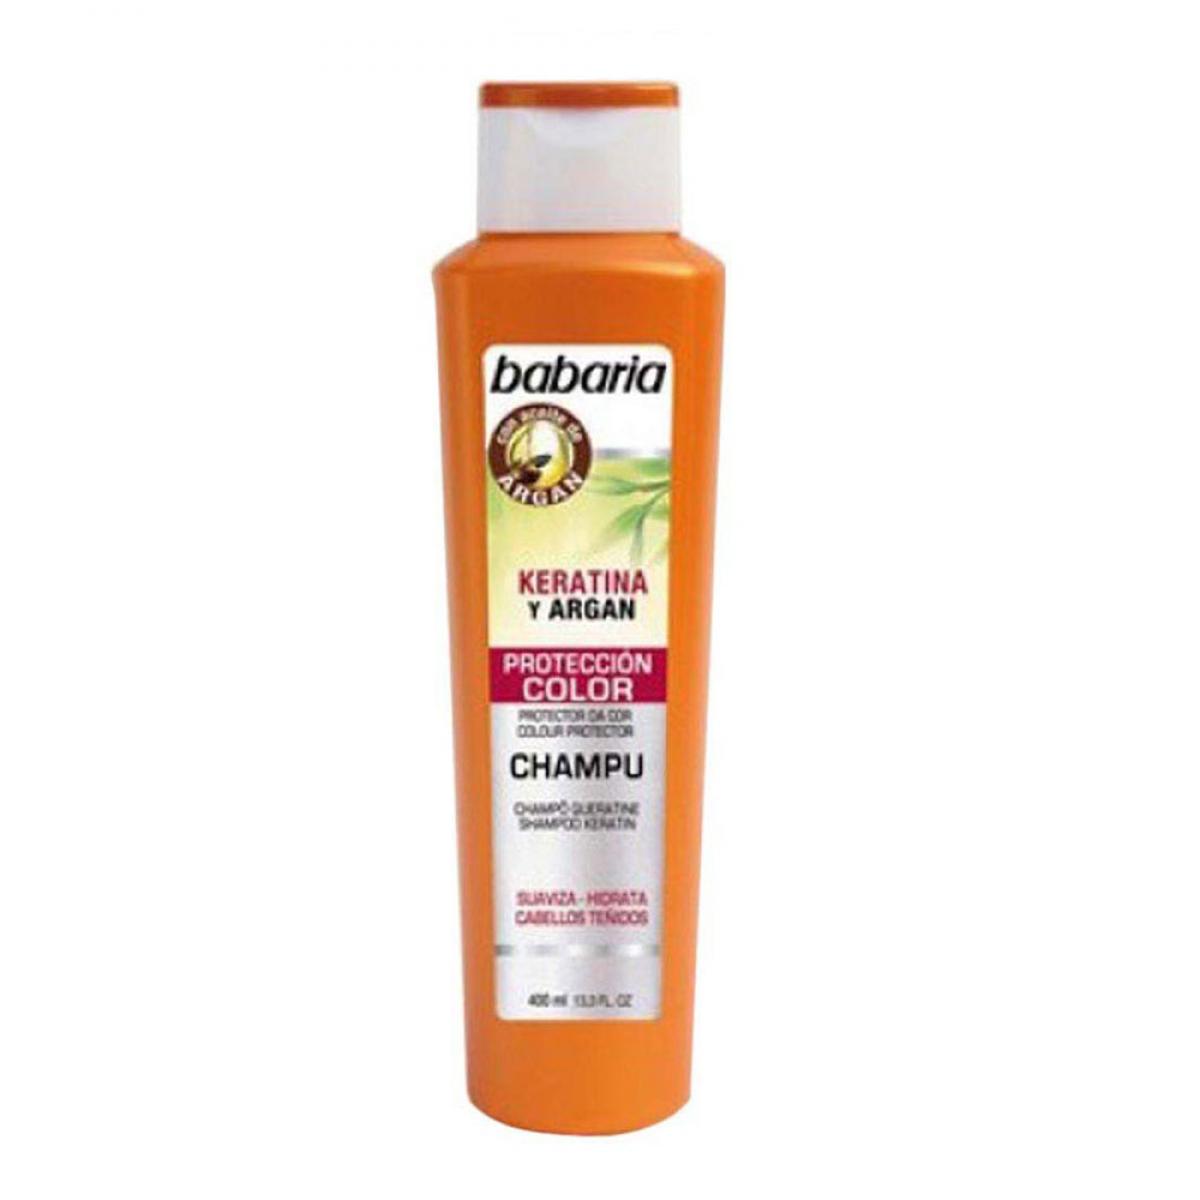 شامپو موهای رنگ شده ارگان و کراتین  - Shampoo color care argan and keratin